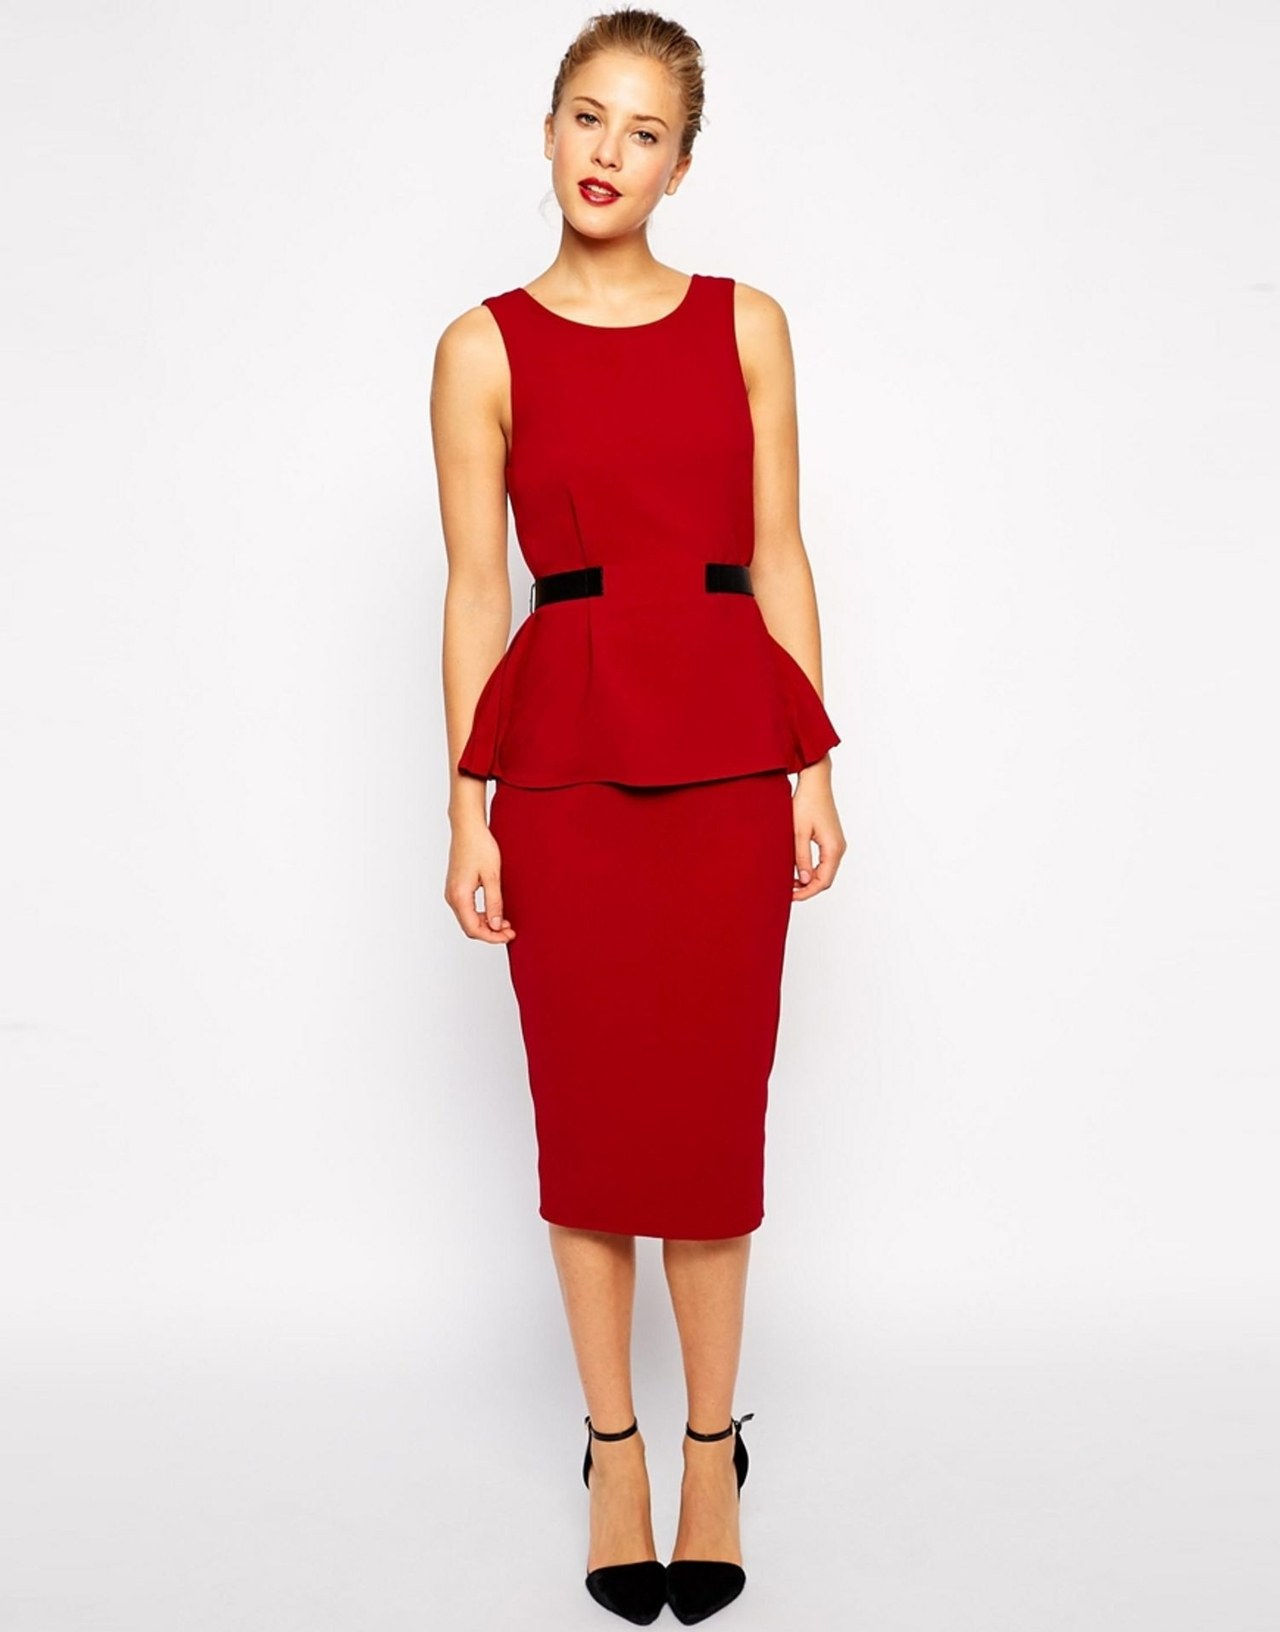 ASOS red peplum top dress